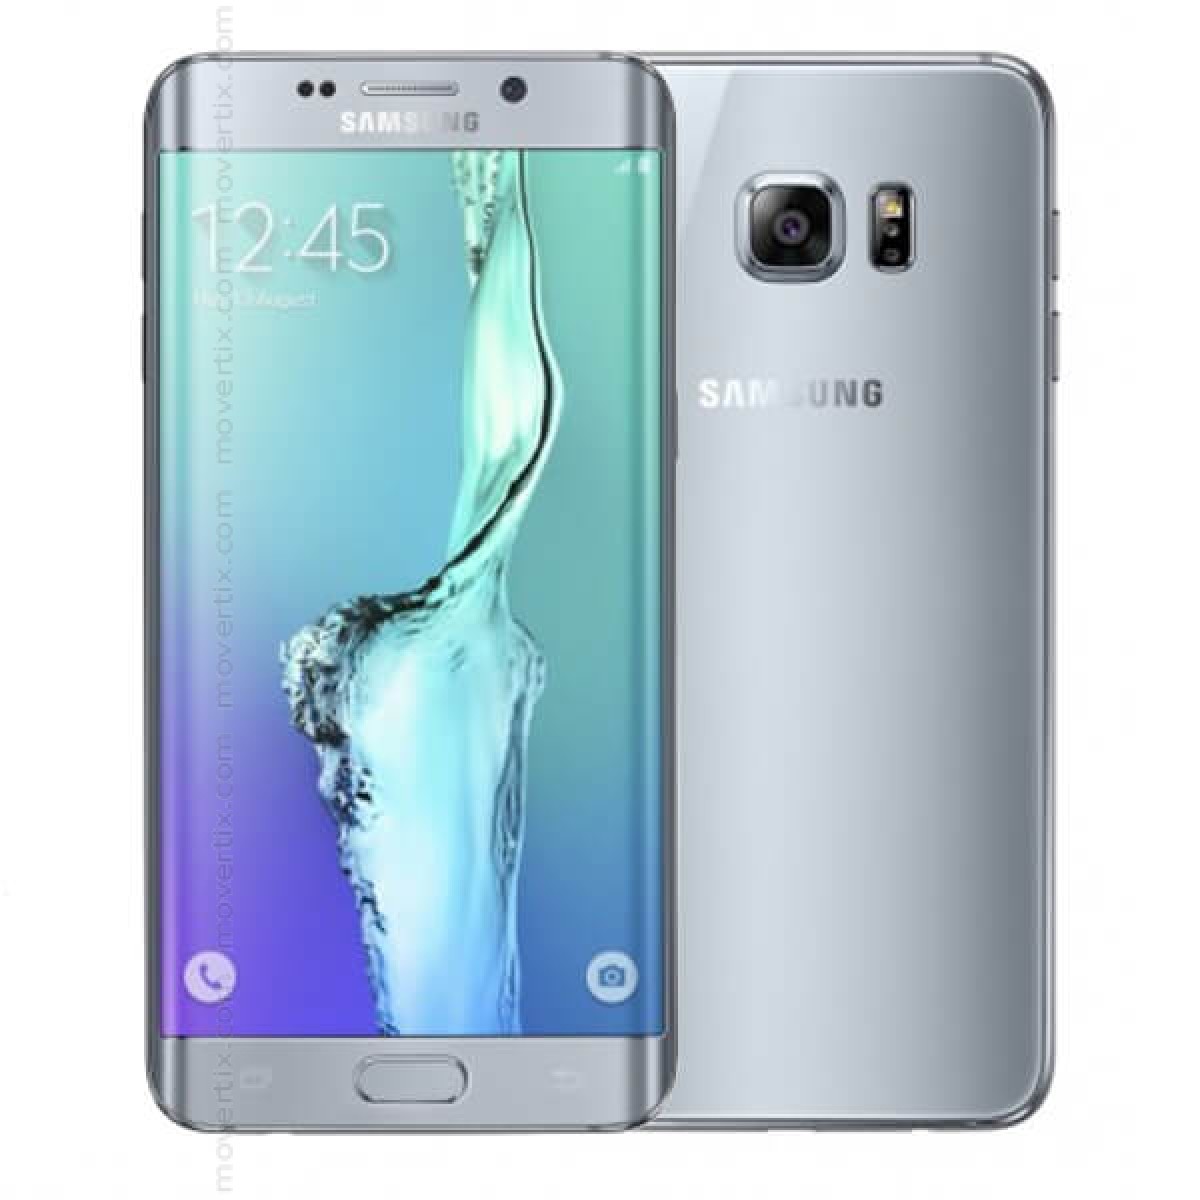 Samsung Galaxy S6 Edge Plus In Silber Mit 32gb Sm G928f 8806086997409 Movertix Handy Shop